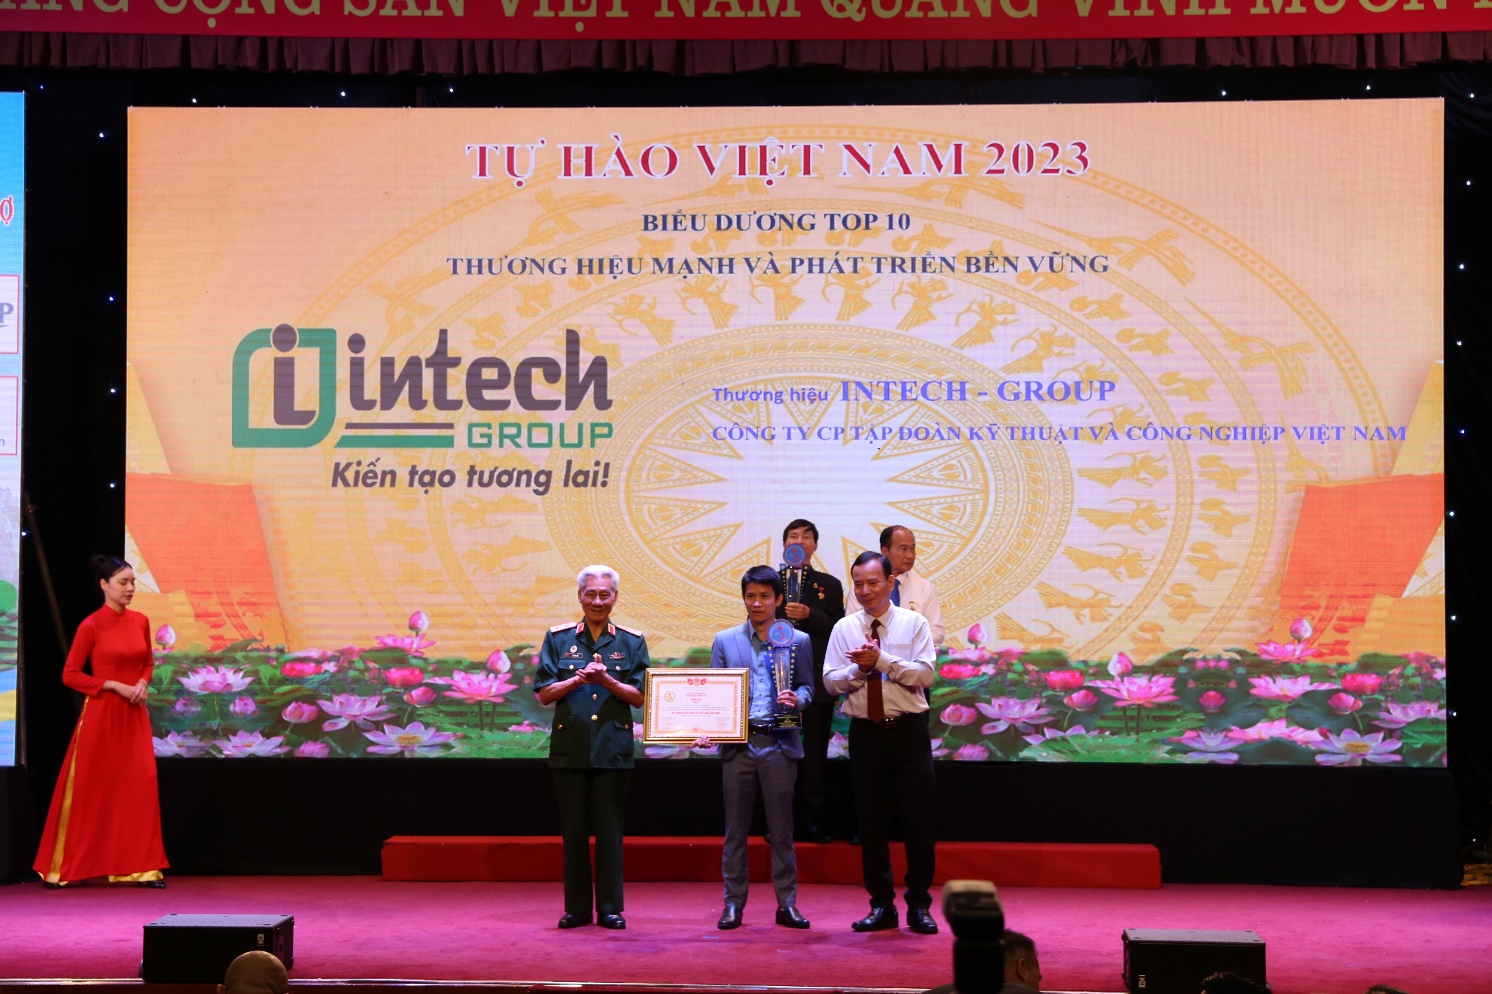 Intech Group dành cú đúp giải thưởng thương hiệu tại chương trình “Tự hào Việt Nam” - 2